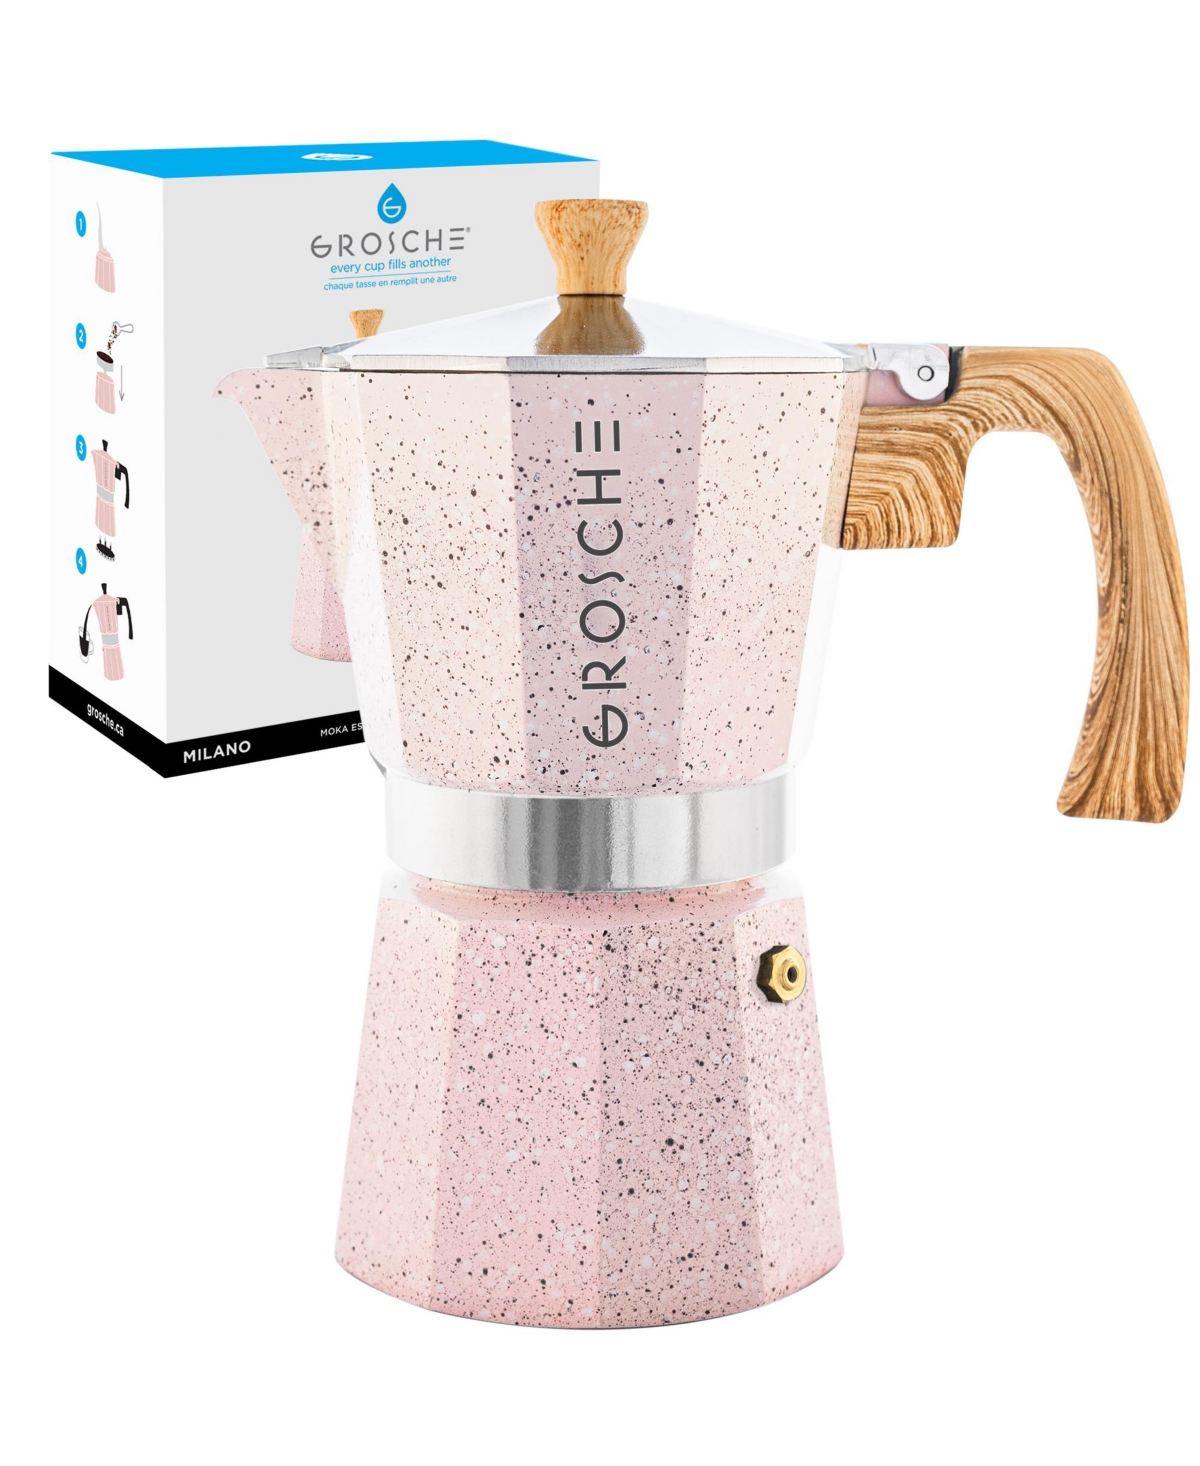 Grosche Milano Stone Stovetop Espresso Maker Moka Pot 9 Cup, 15.2 oz In Blush Pink